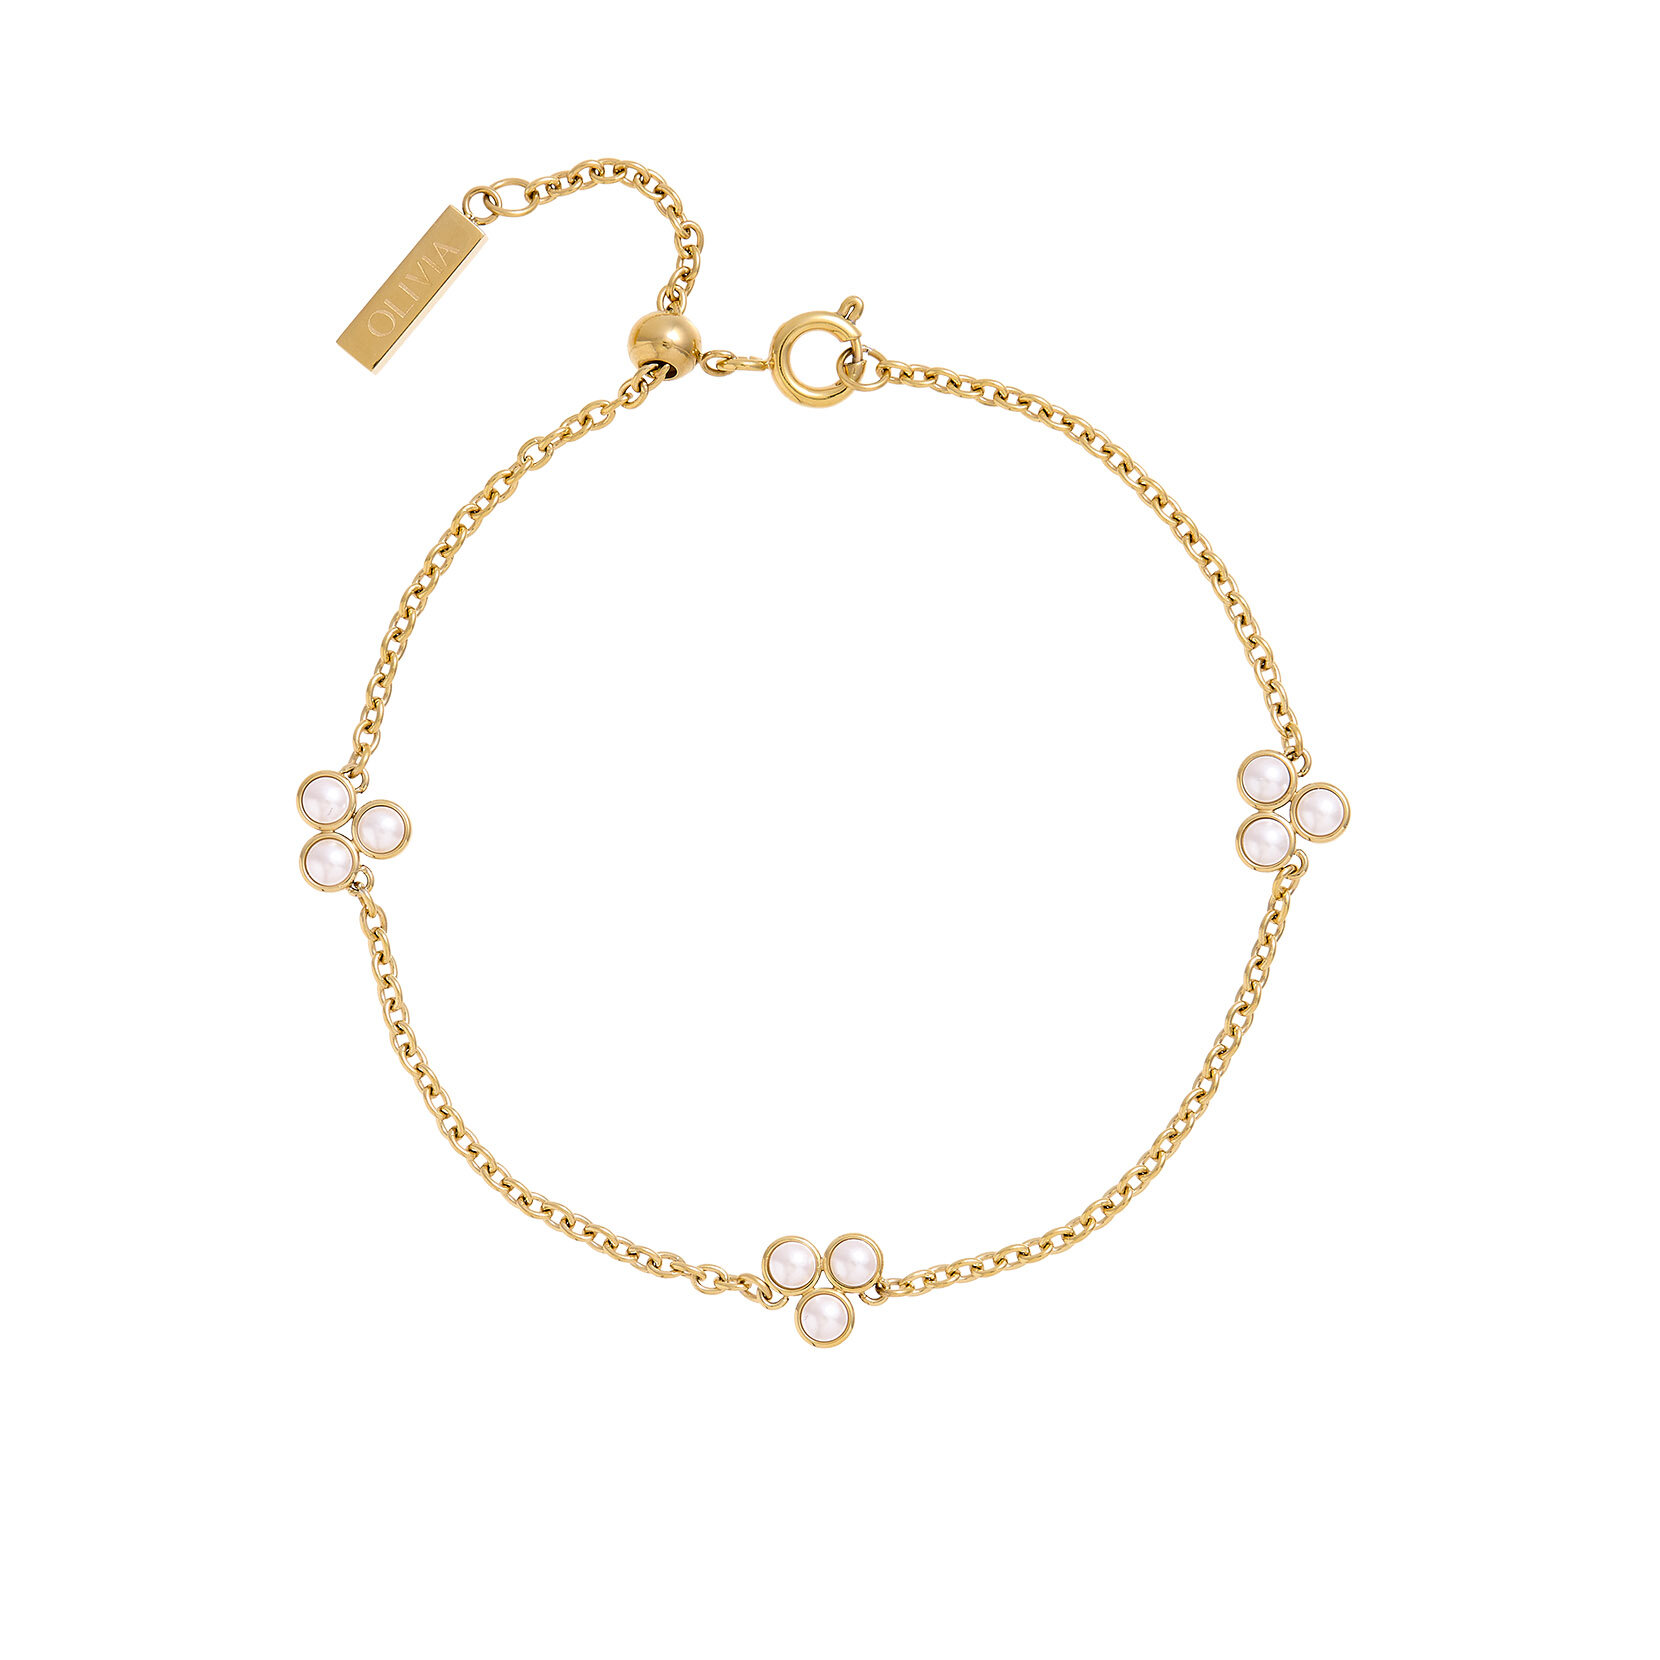 SOLD Louis Vuitton Flower Full bracelet